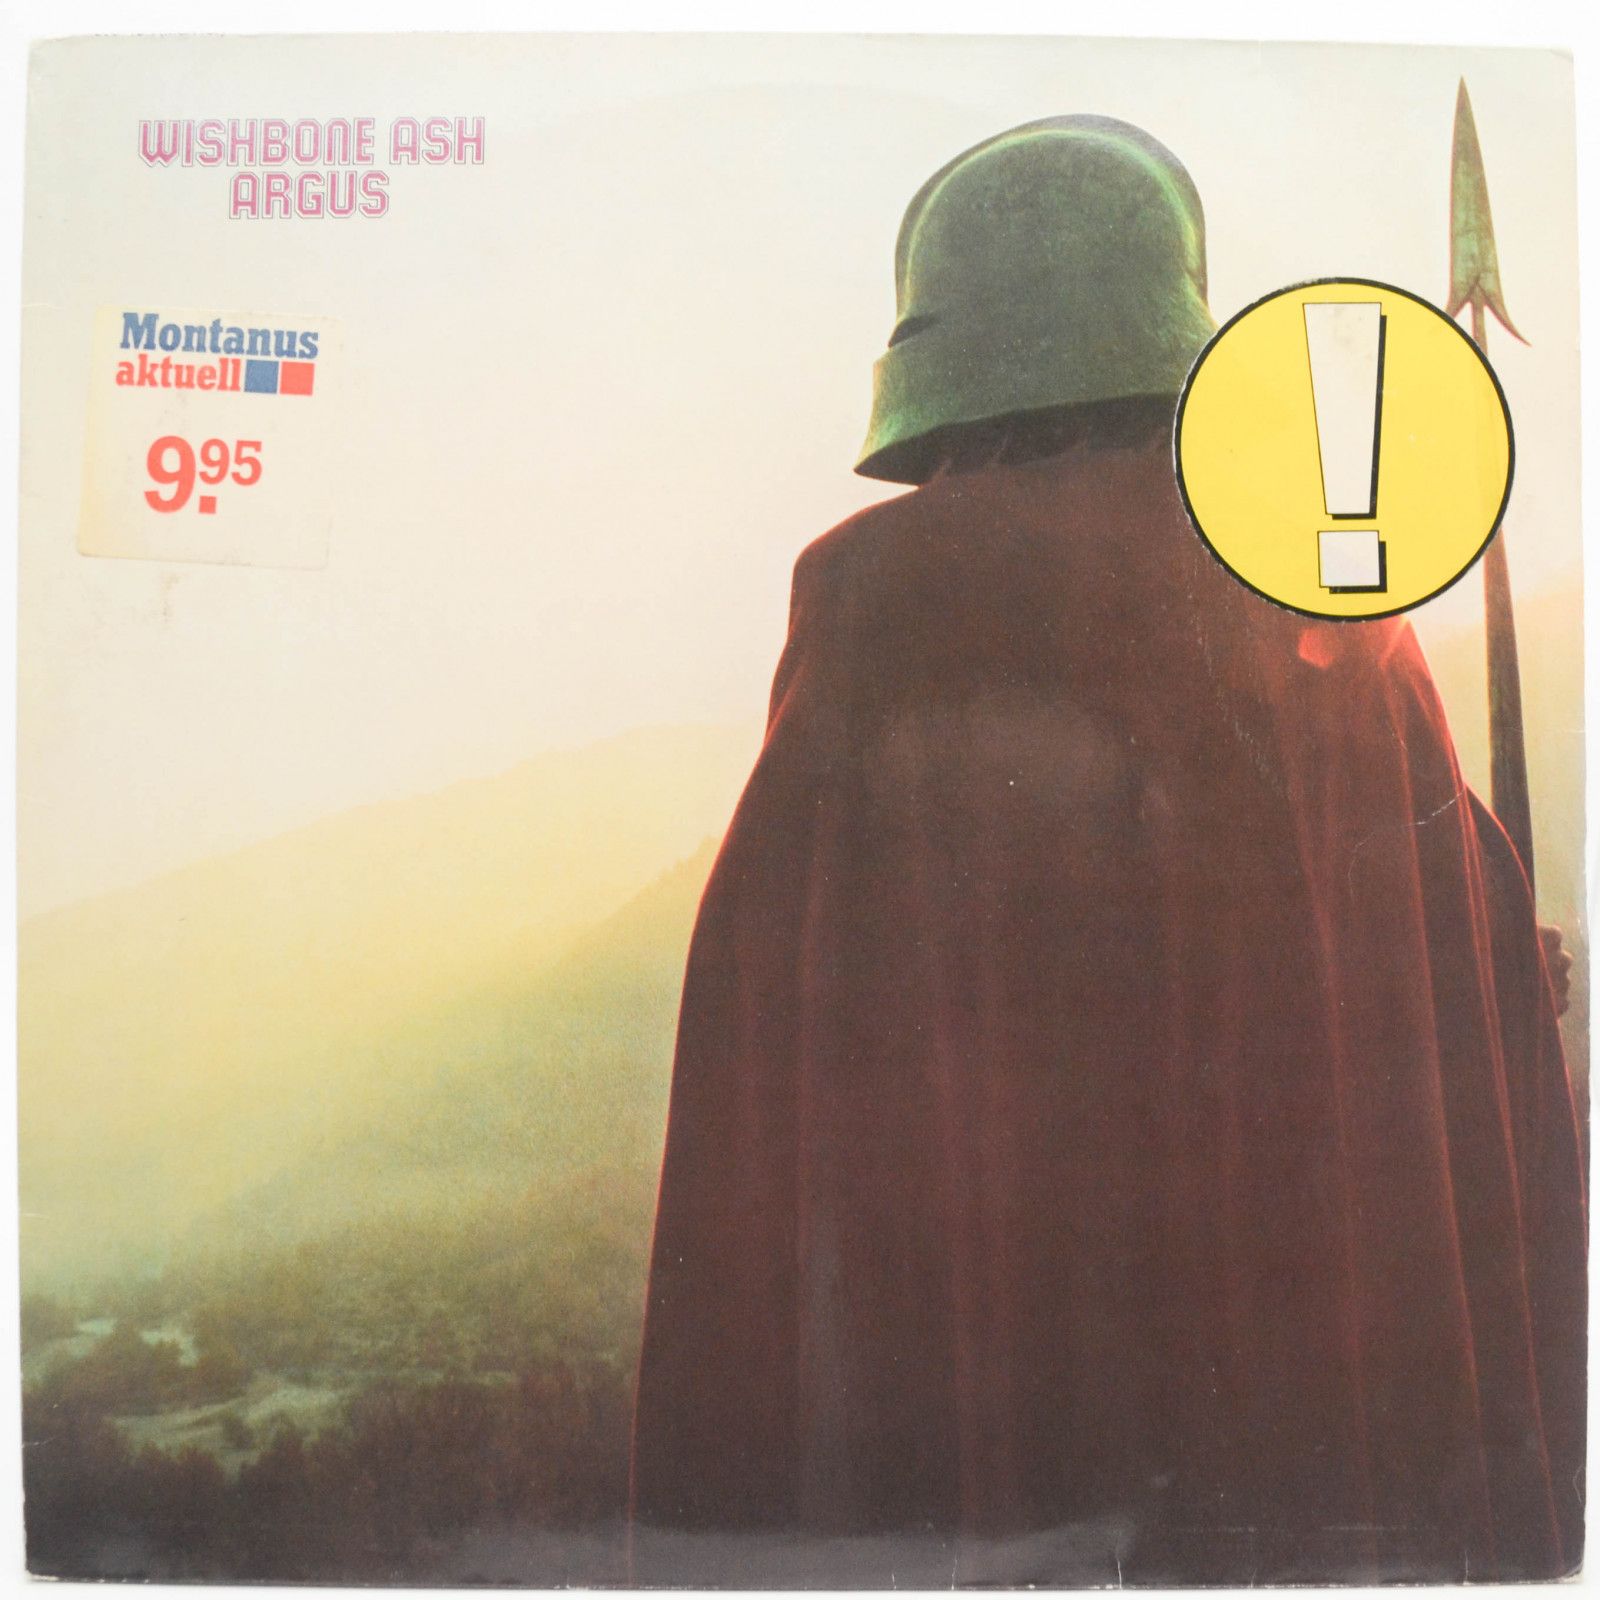 Wishbone Ash — Argus, 1972